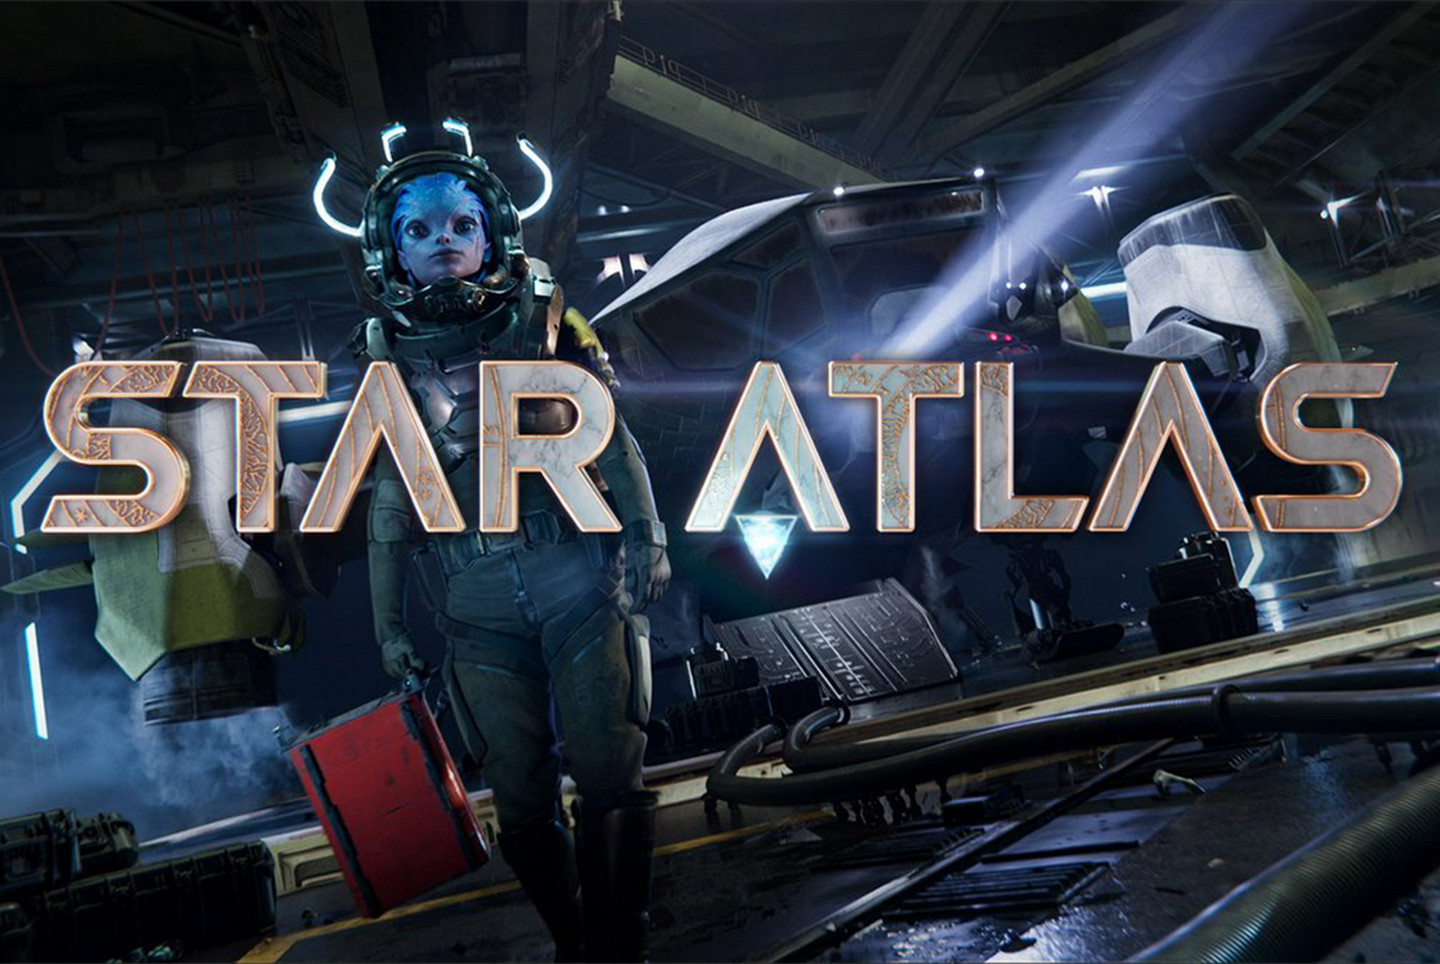 Star Atlas Companion